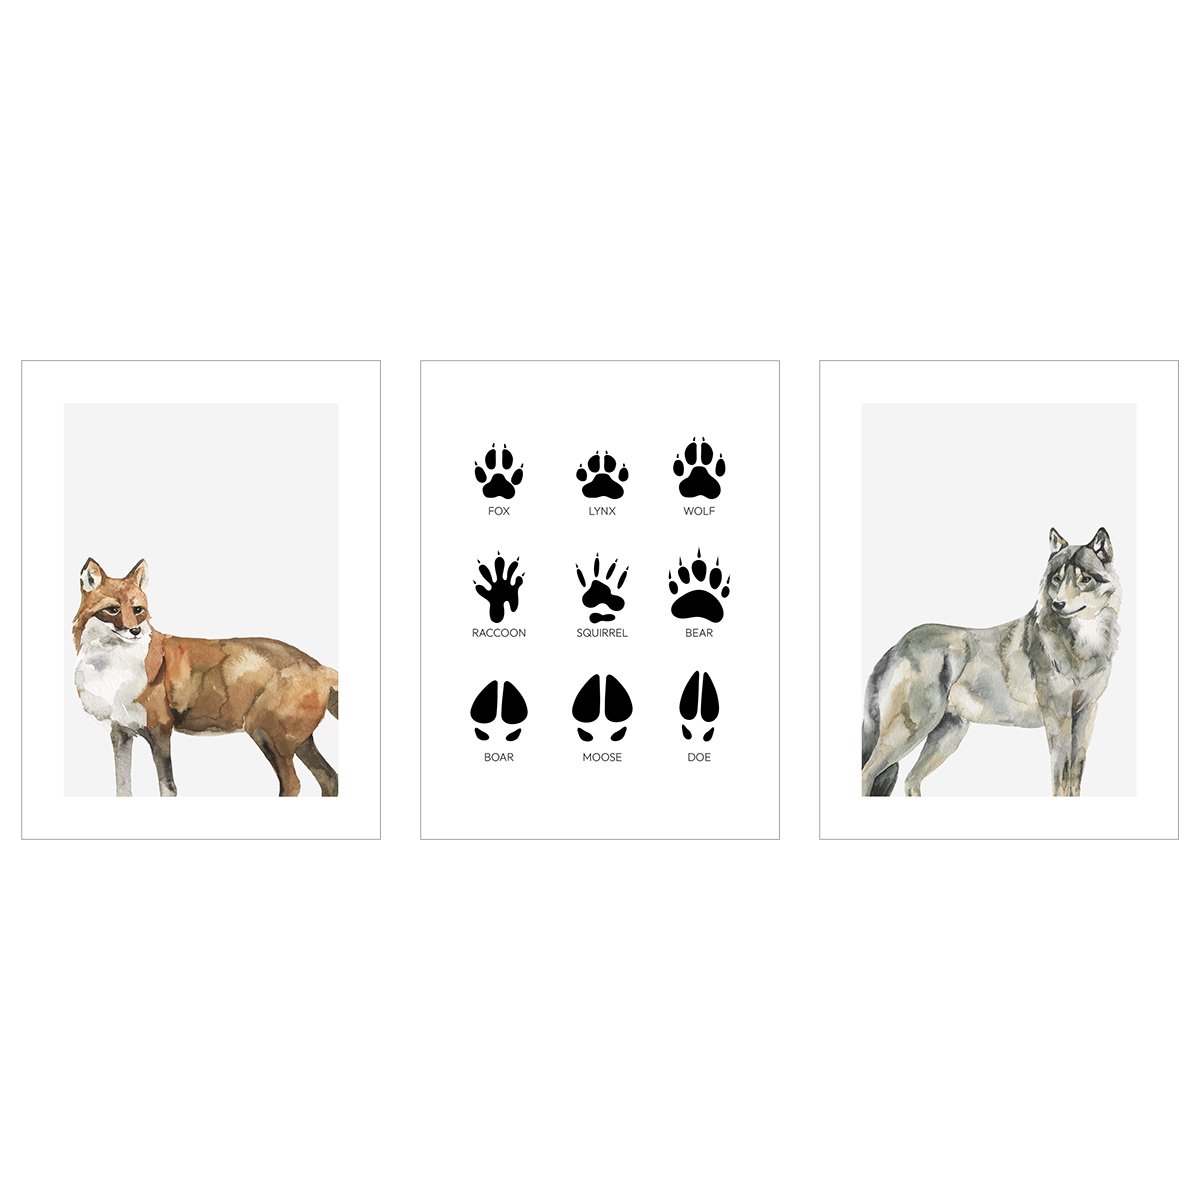 Plakaty z lisem, wilkiem i śladami zwierząt leśnych - zestaw trzech plakatów